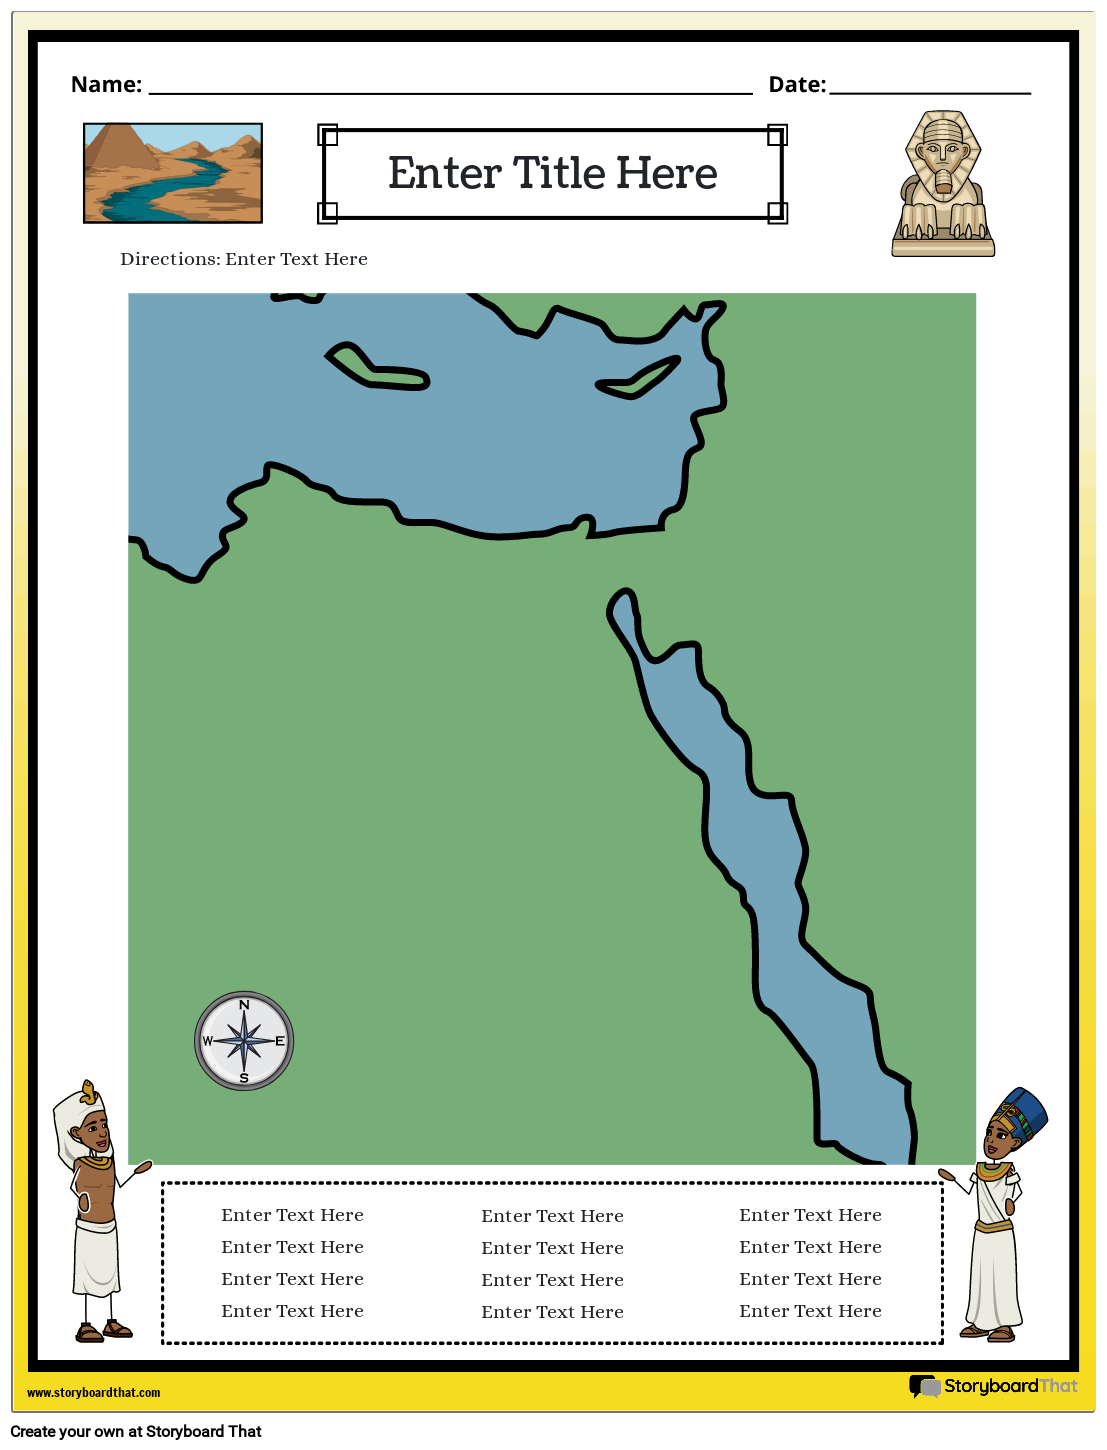 Karte des Alten Ägypten